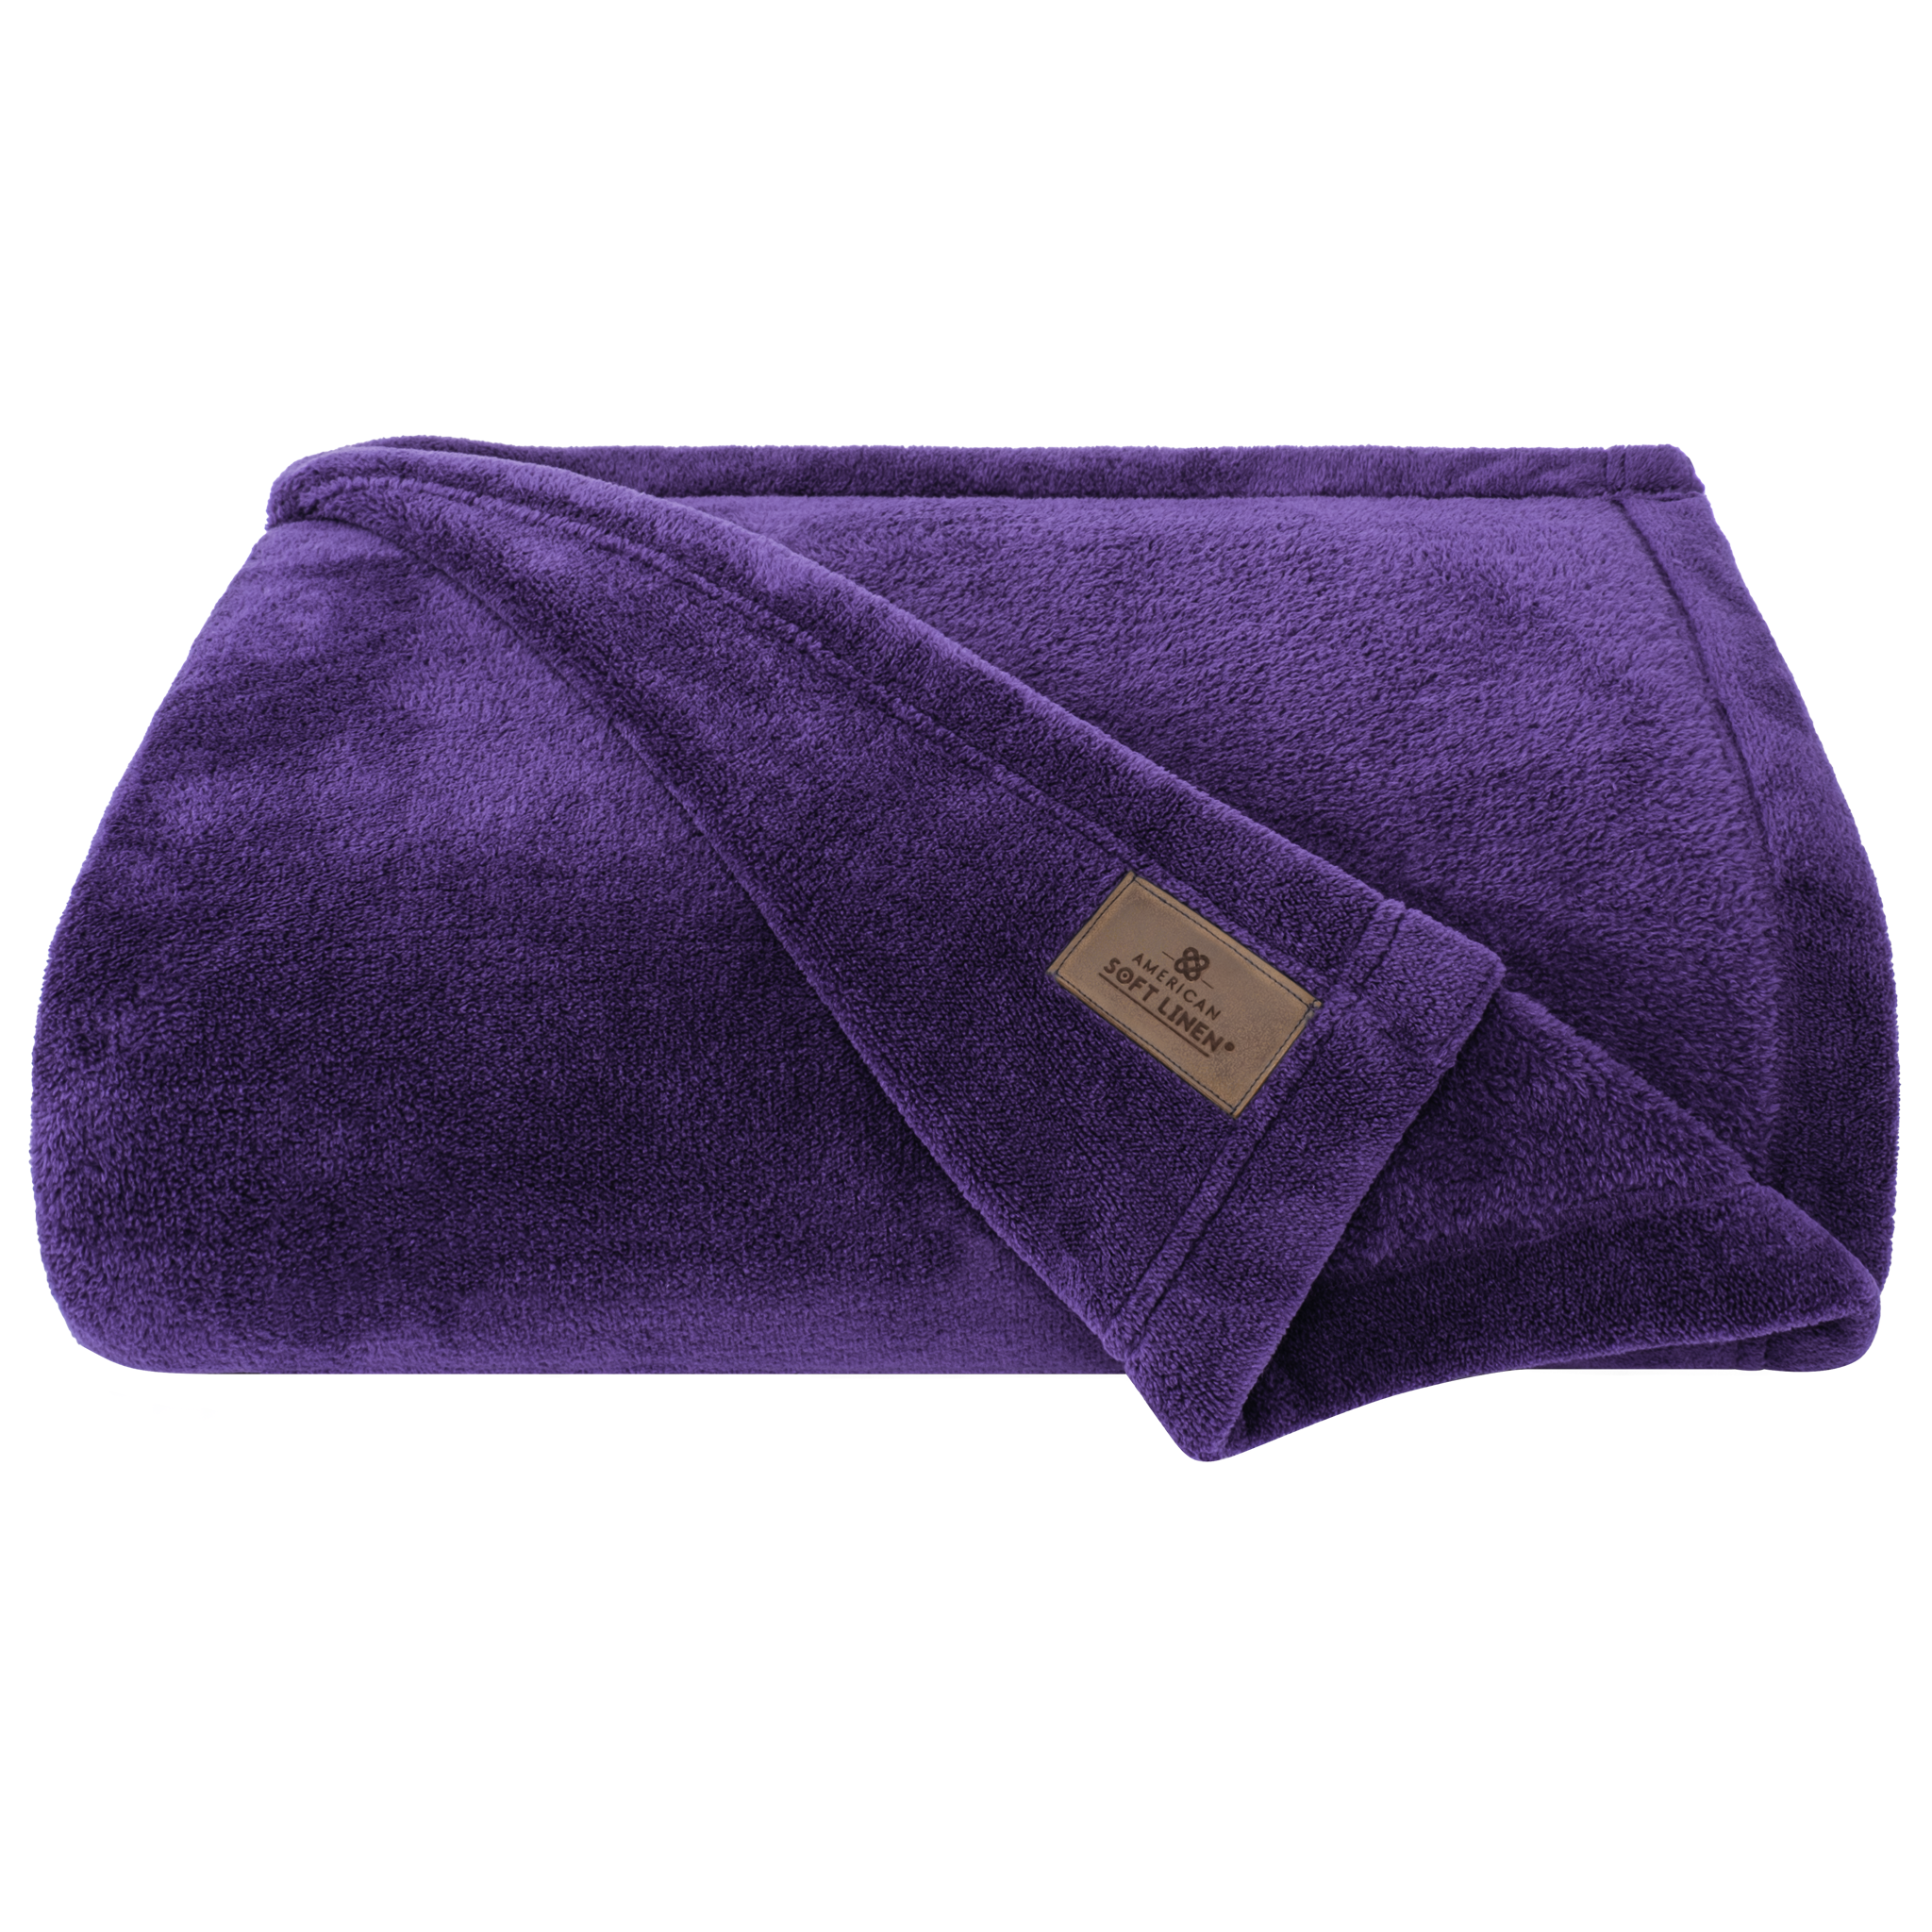 American Soft Linen - Bedding Fleece Blanket - Queen Size 85x90 inches - Purple - 3